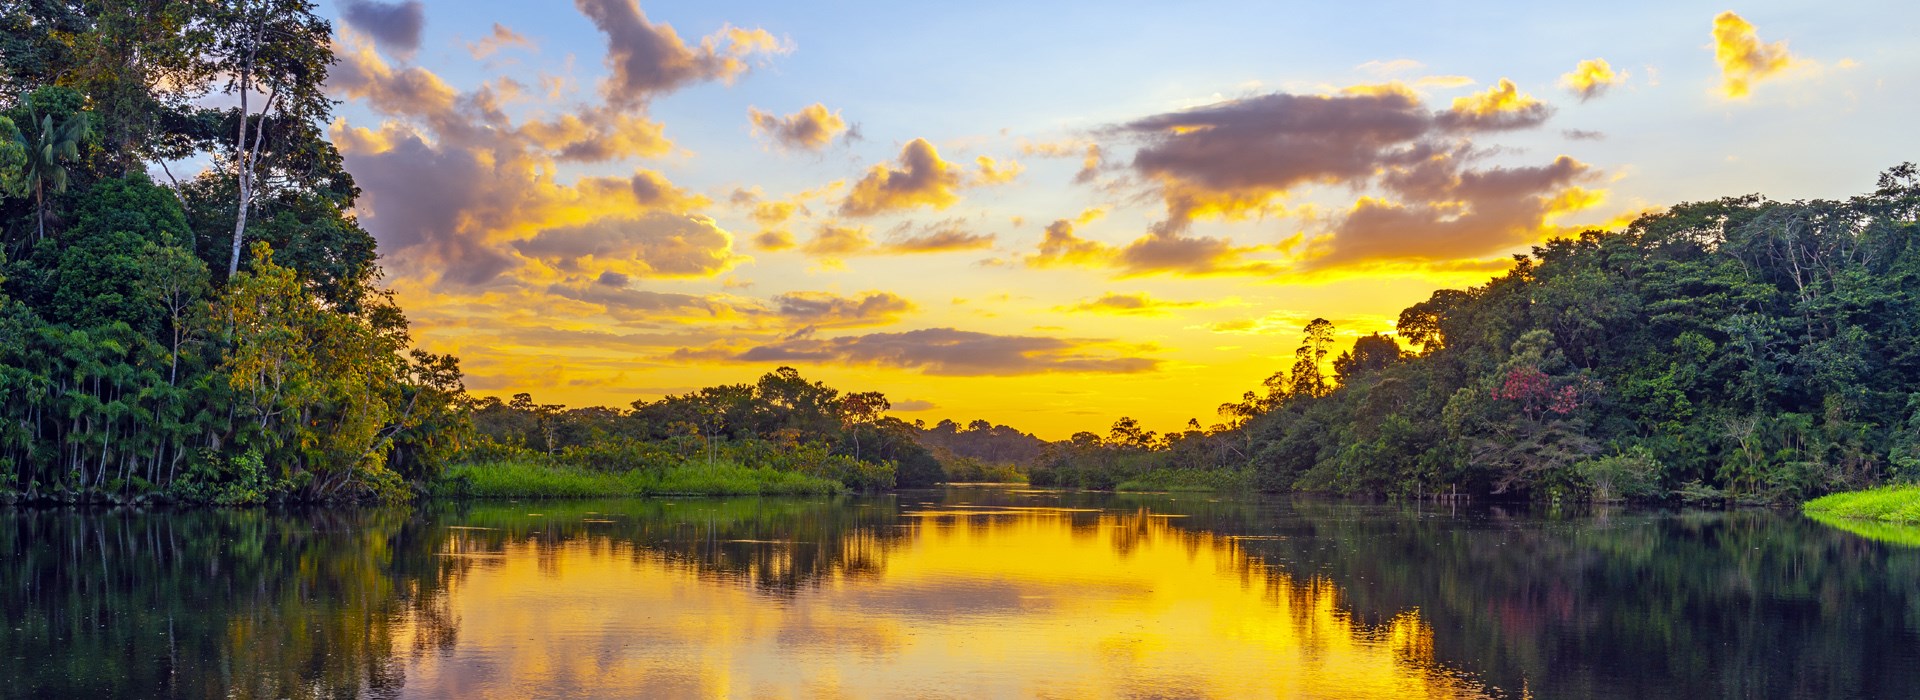 Visiter Le lac Janauari - Brésil